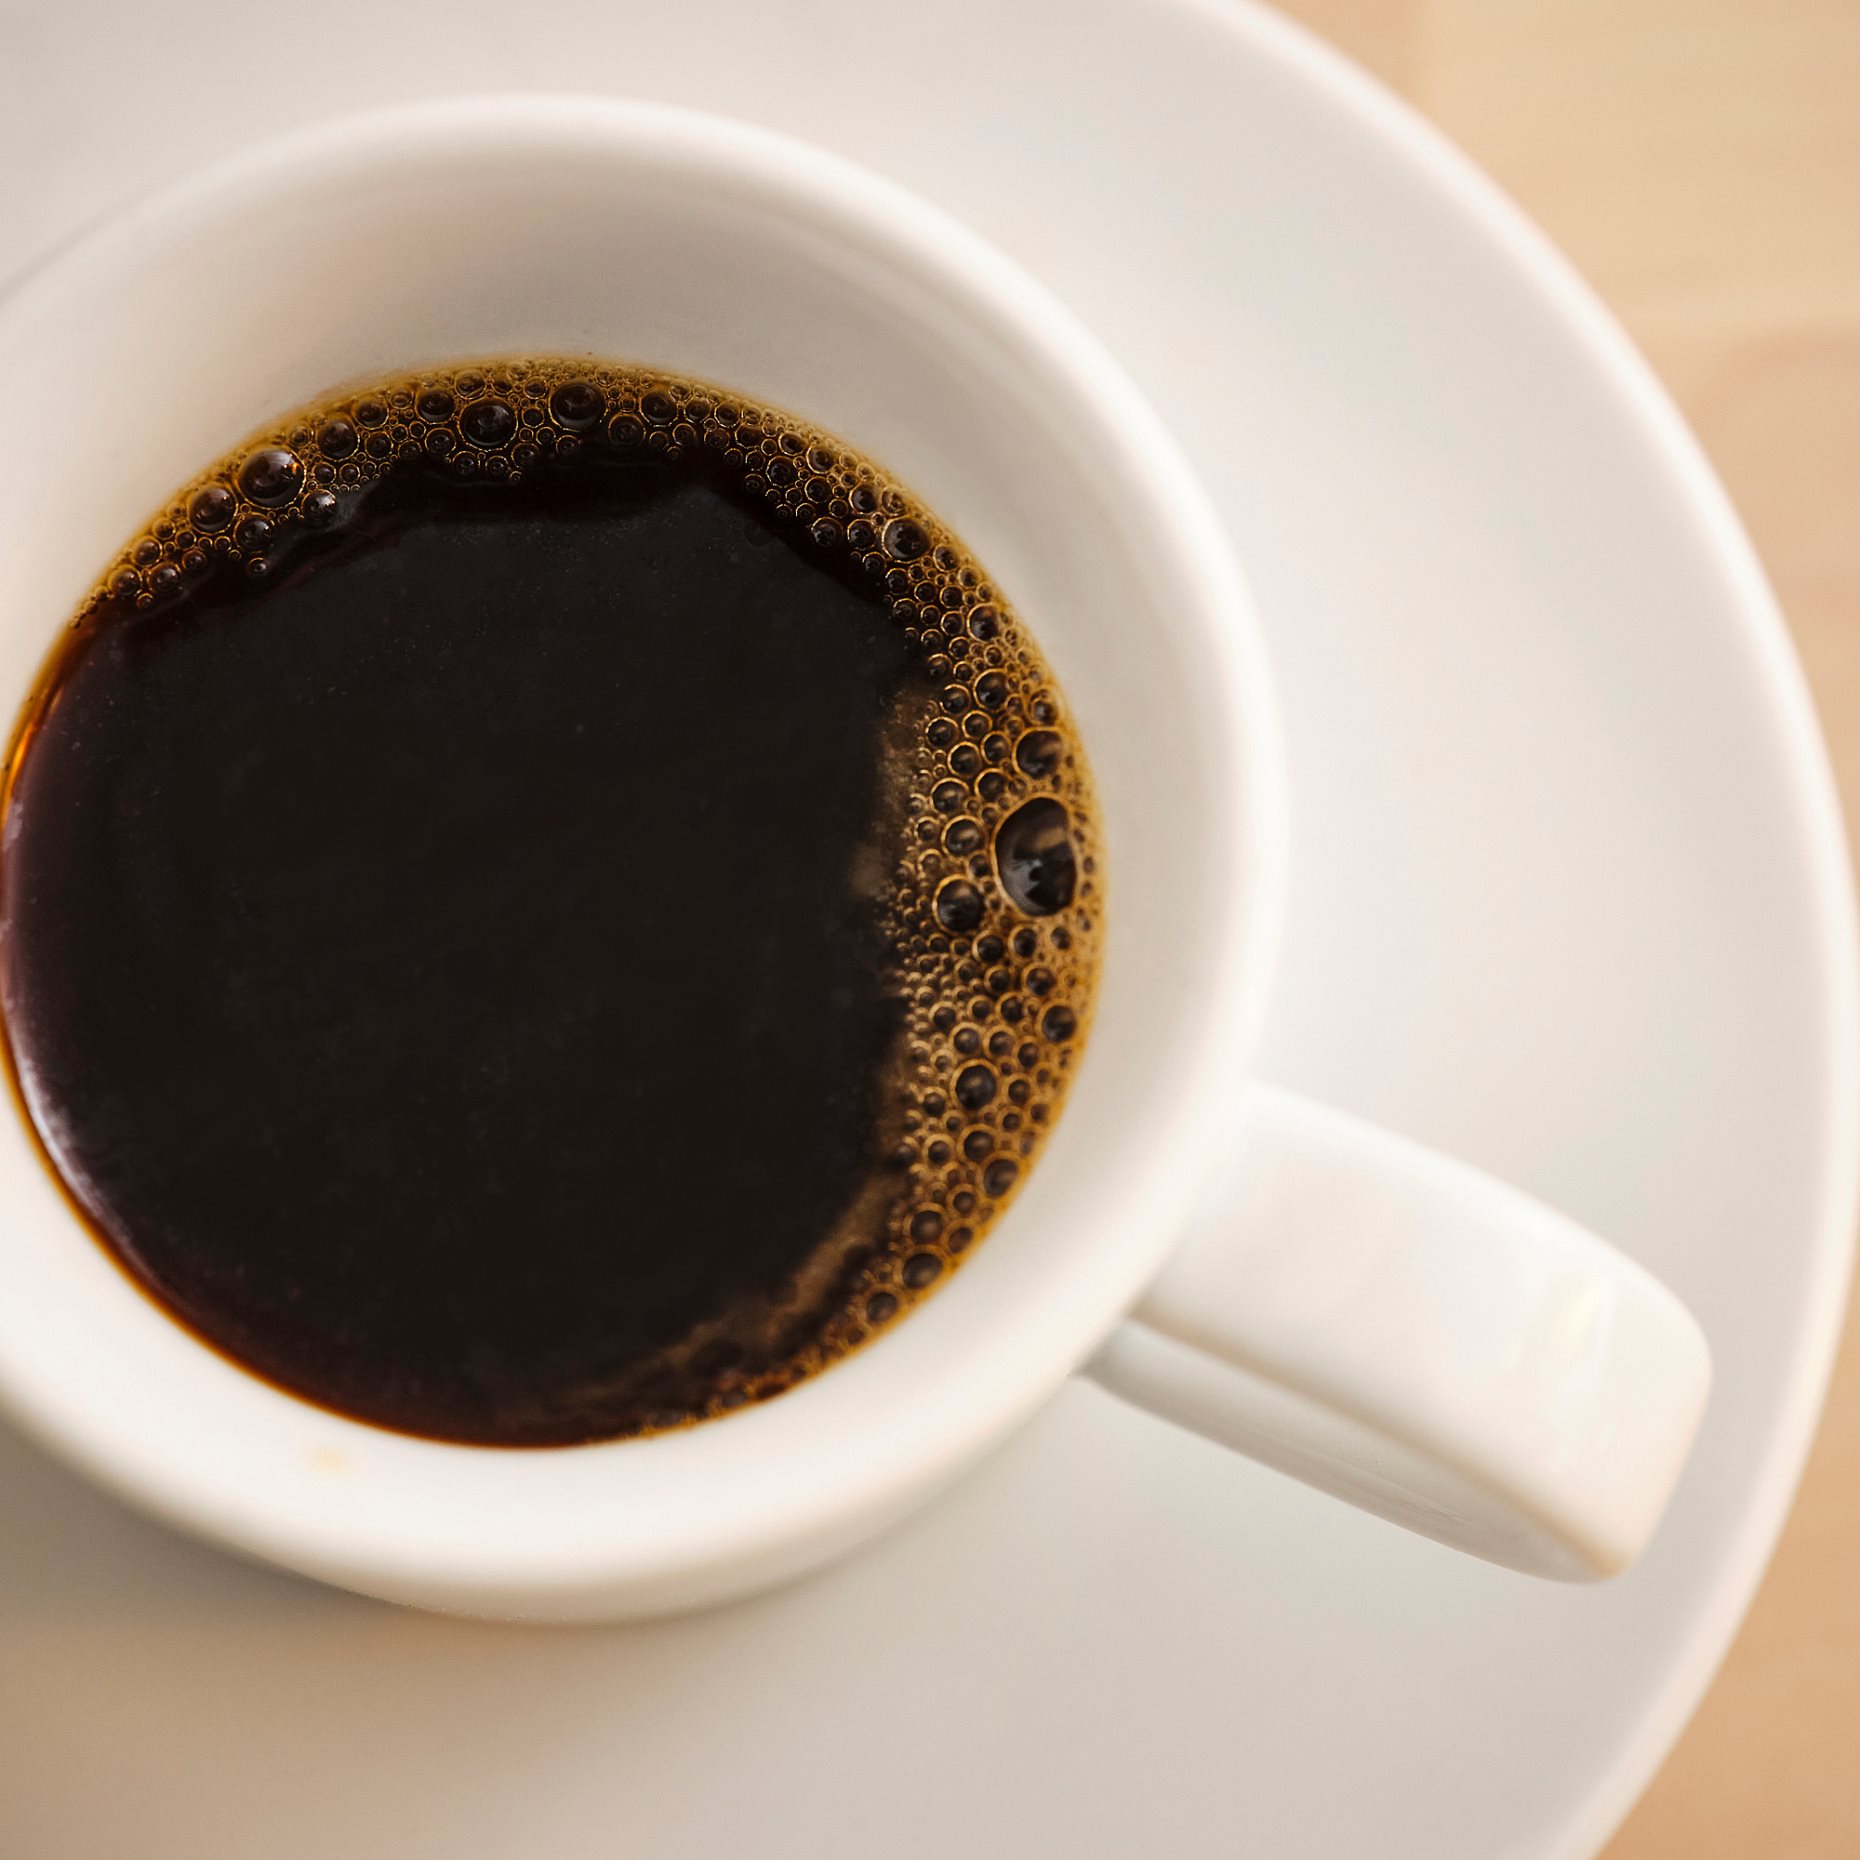 PATAR, καβουρδισμένος καφές εσπρέσο σκούρος σε κόκκους, βιολογικής γεωργίας, 250 g, rac, 305.311.25